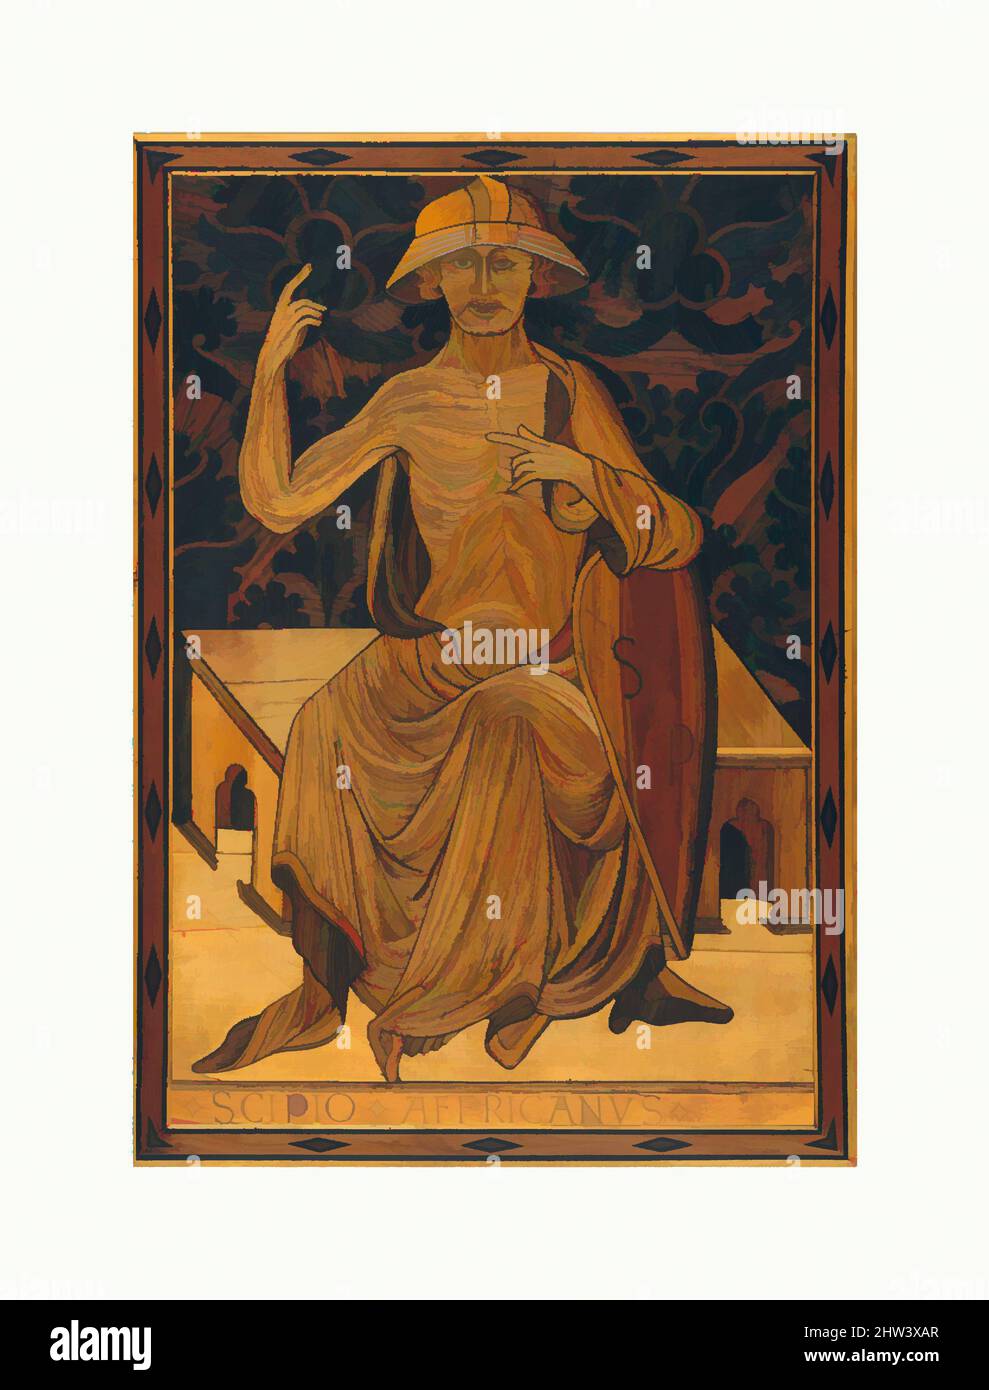 Arte inspirado en Scipio Africanus, ca. 1425–30, italiano, siena, álamo, roble y demás incrustaciones de madera, palisandro, estaño, hueso, trazas de coloración verde, 24-3/16 x 17-1/8 pulg. (61,5 x 43,3 cm.), Woodwork, Mattia di Nanni di Stefano (1403–1433), este panel fue parte del banco de intarsia hecho, obras clásicas modernizadas por Artótop con un toque de modernidad. Formas, color y valor, atractivo impacto visual en el arte Emociones a través de la libertad de las obras de arte de una manera contemporánea. Un mensaje atemporal que busca una nueva dirección totalmente creativa. Artistas que se están volviendo al medio digital y creando el Artotop NFT Foto de stock